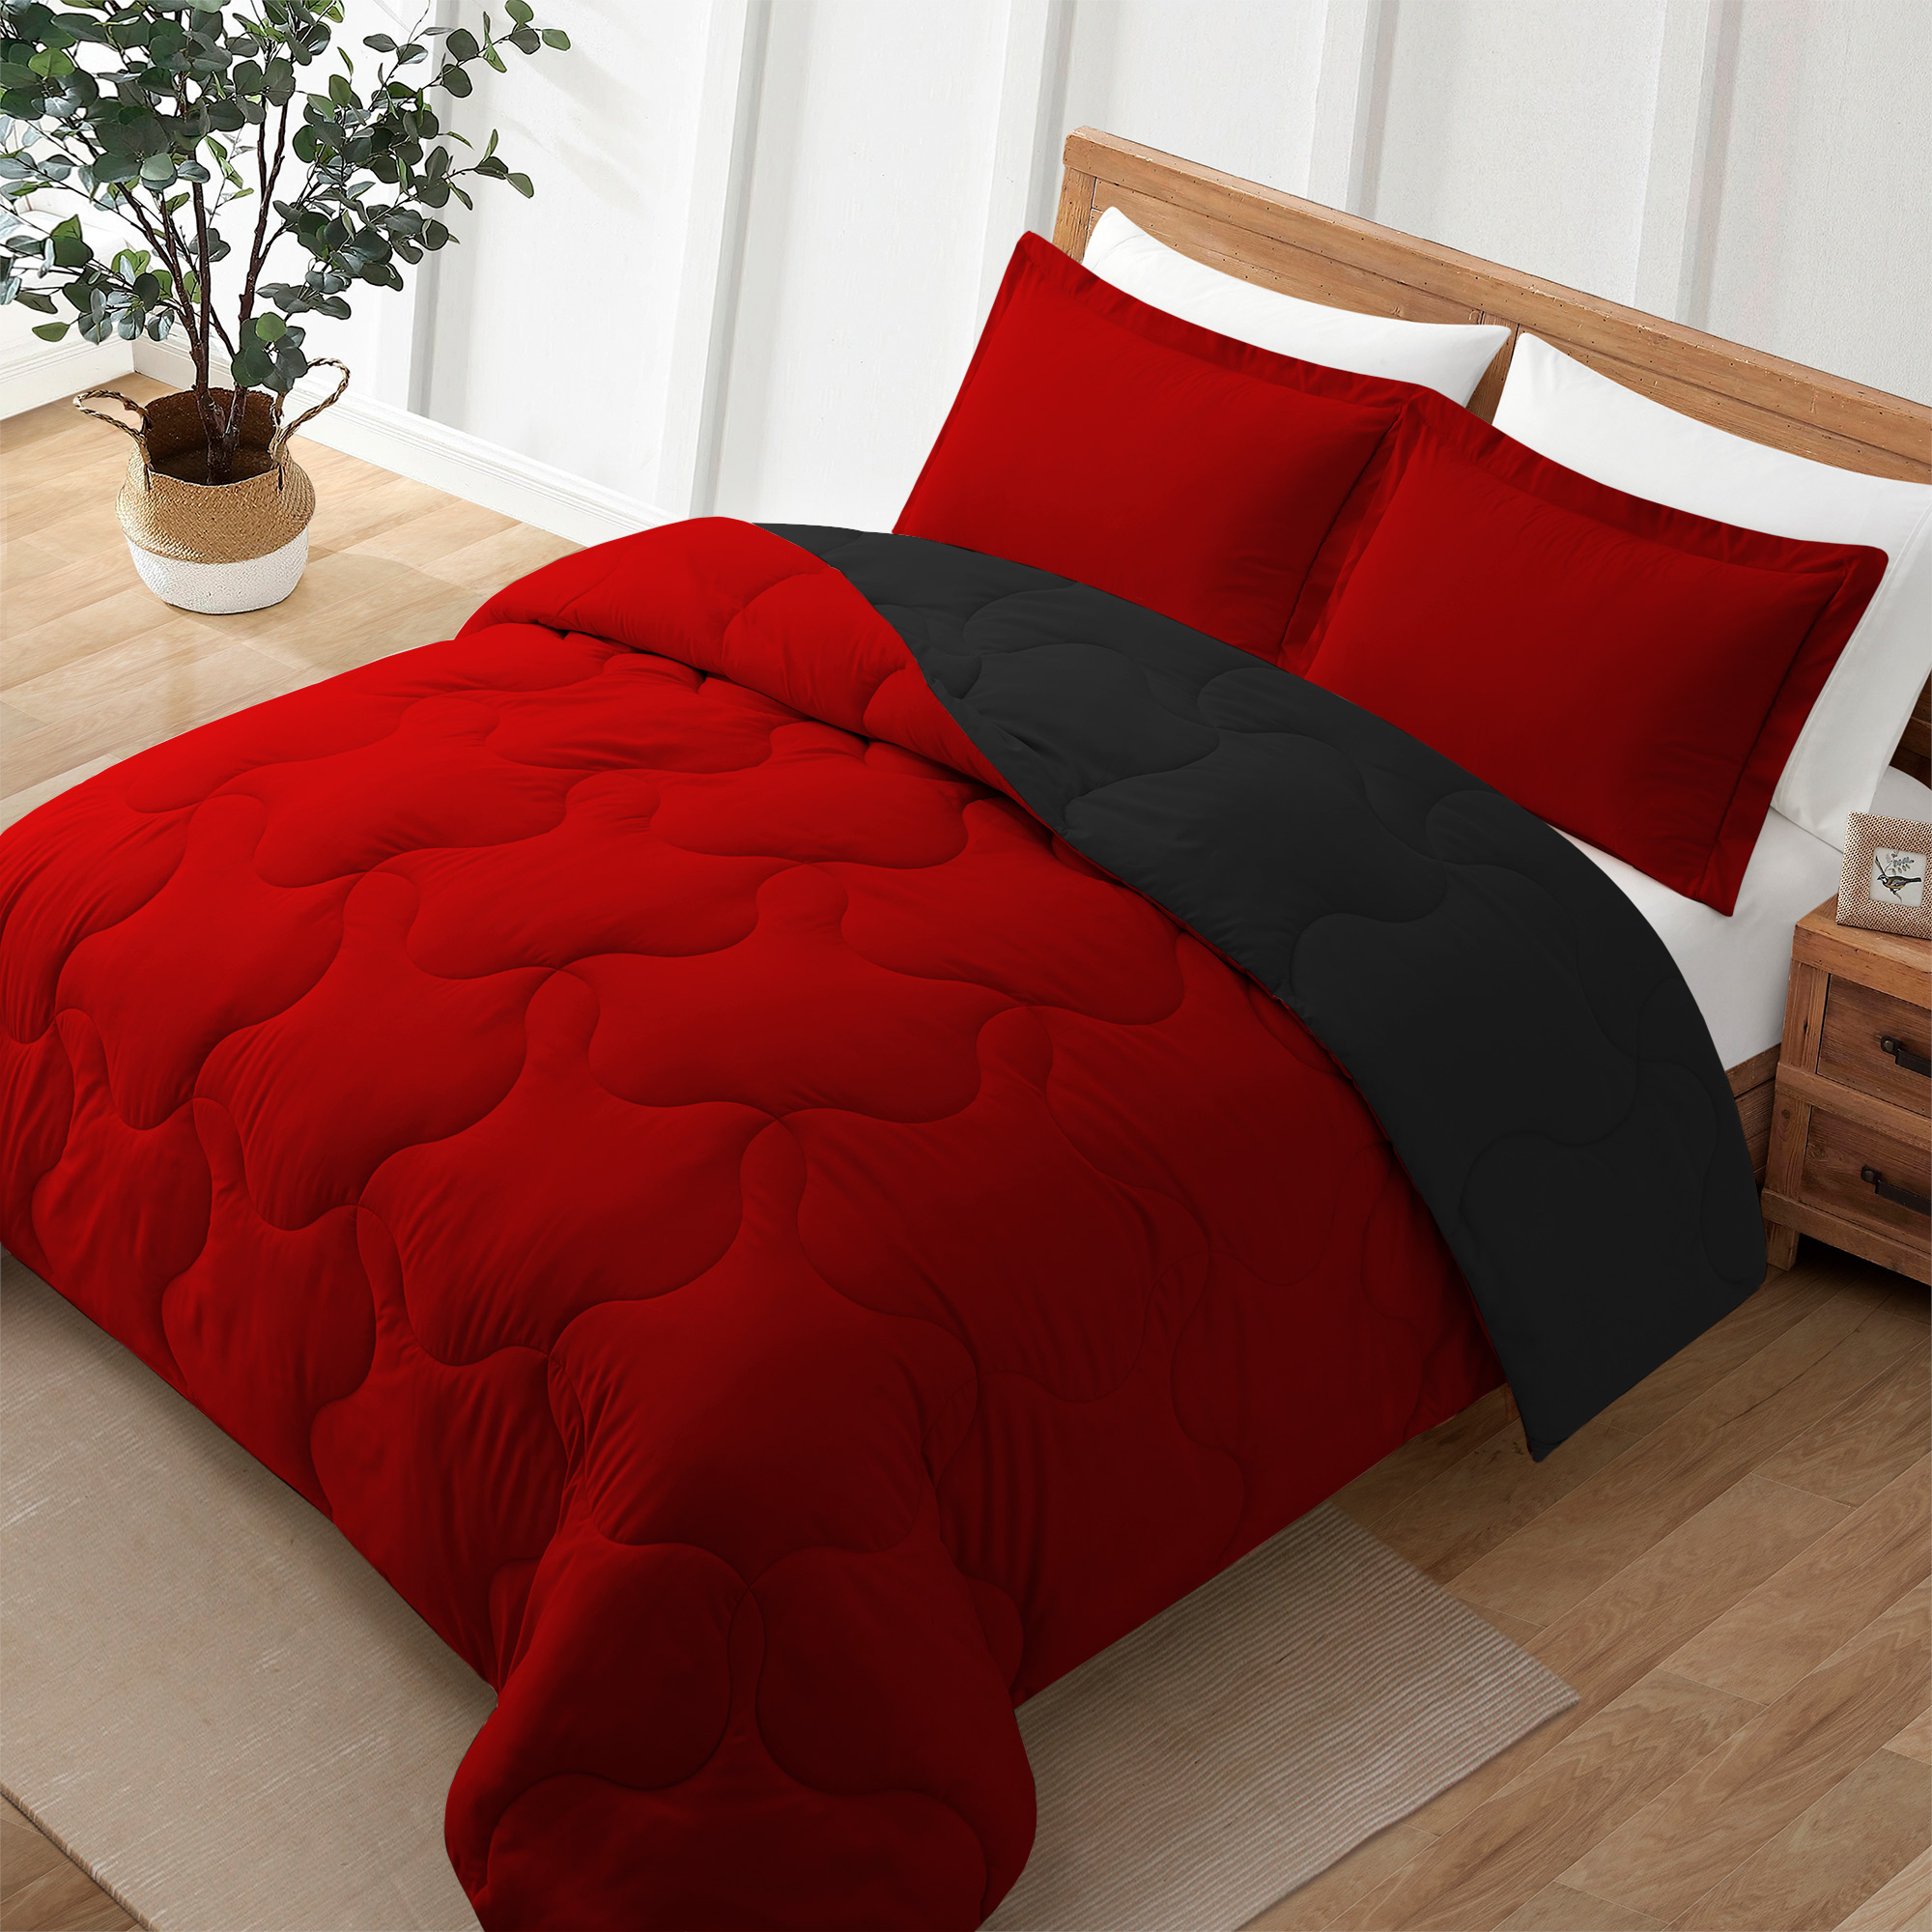 Reversible Superior Soft Comforter Sets, Down Alternative Comforter, Black&Red, King